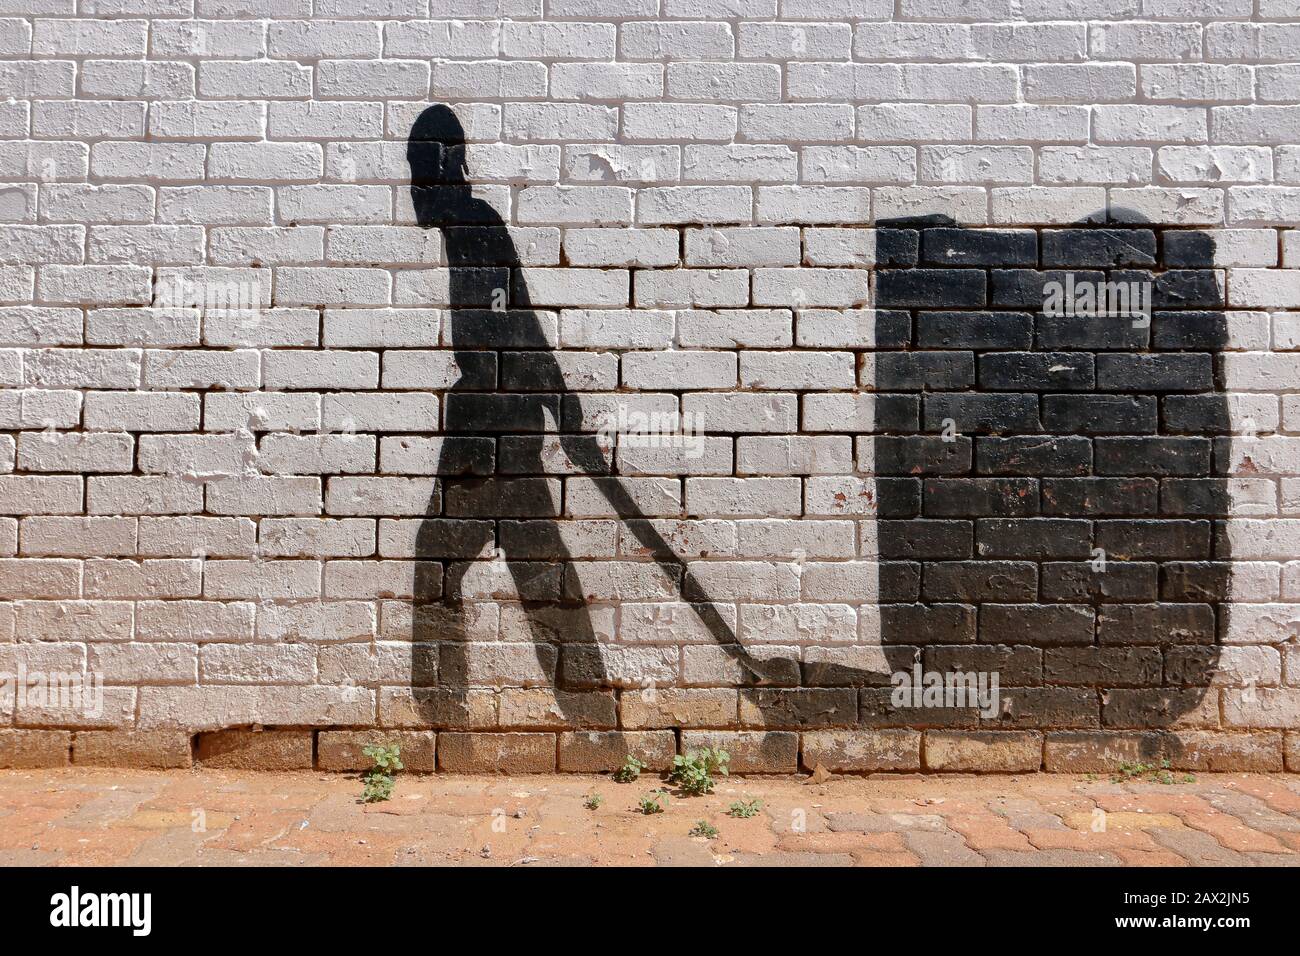 Street Art im Silhouette- oder Schattenformat, das die Entschlossenheit zeigt, hart für ein Einkommen aus dem Lebensunterhalt zu arbeiten und trotz der Chancen weiter zu gehen Stockfoto